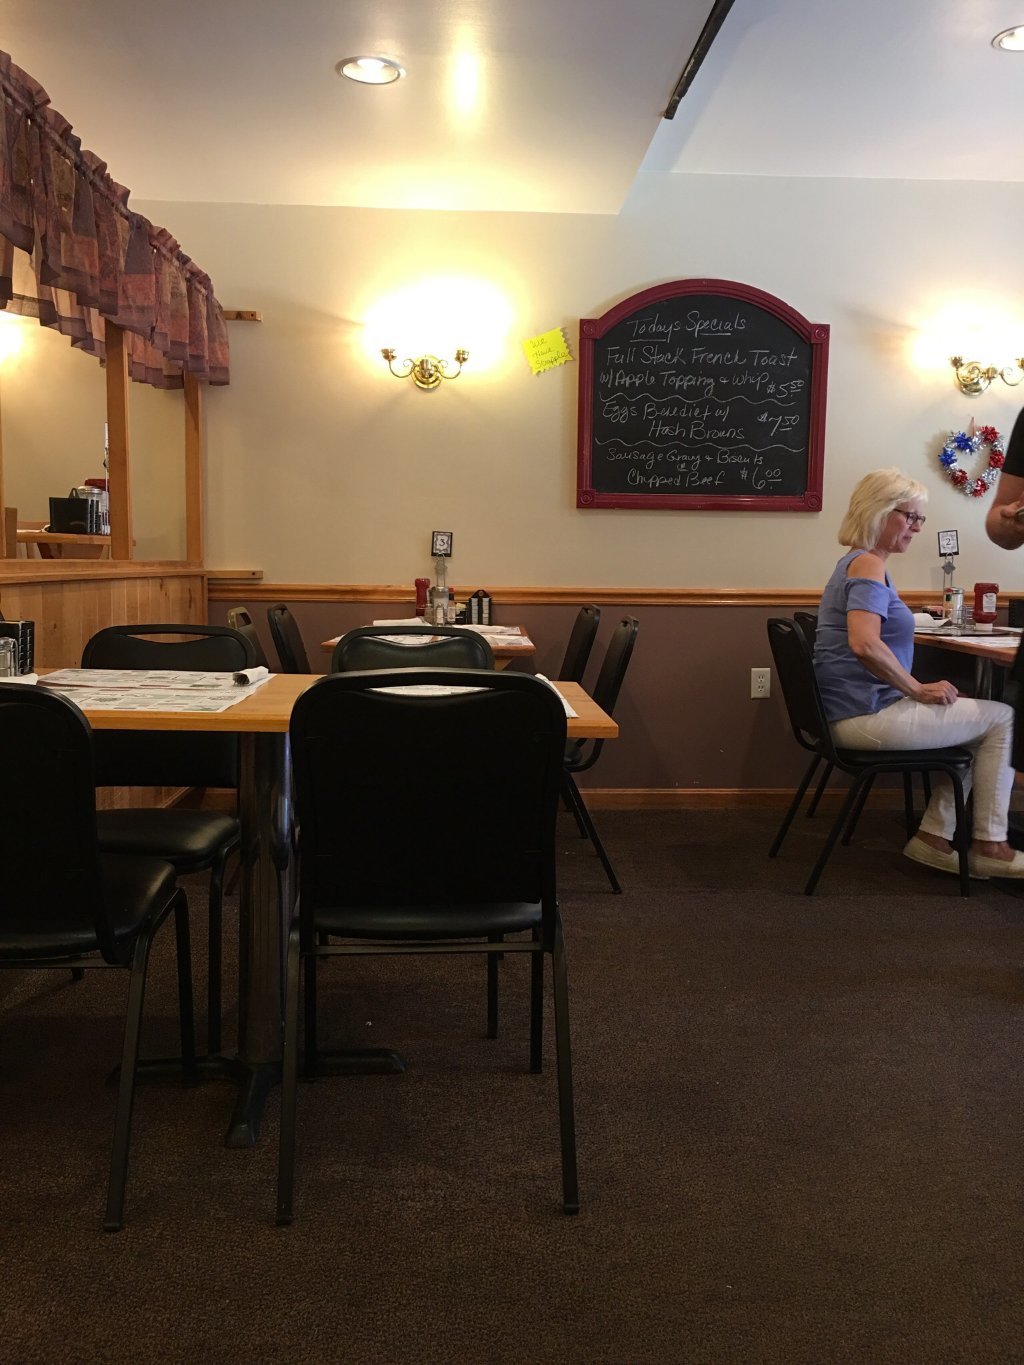 Jensz Cafe